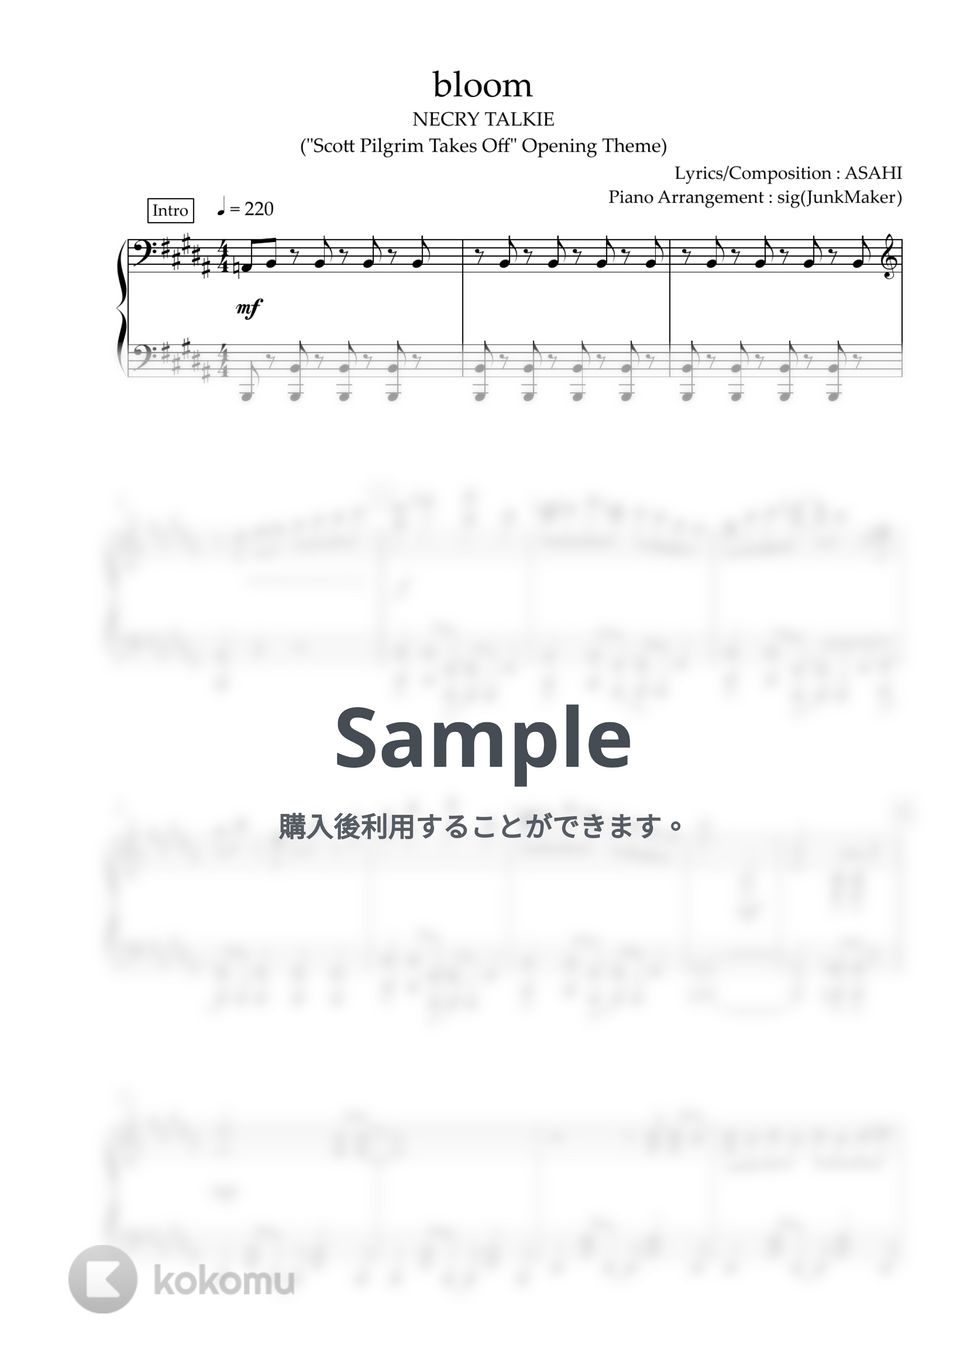 ネクライトーキー - bloom (ピアノソロ/TV Size) by しぐ（JunkMaker）